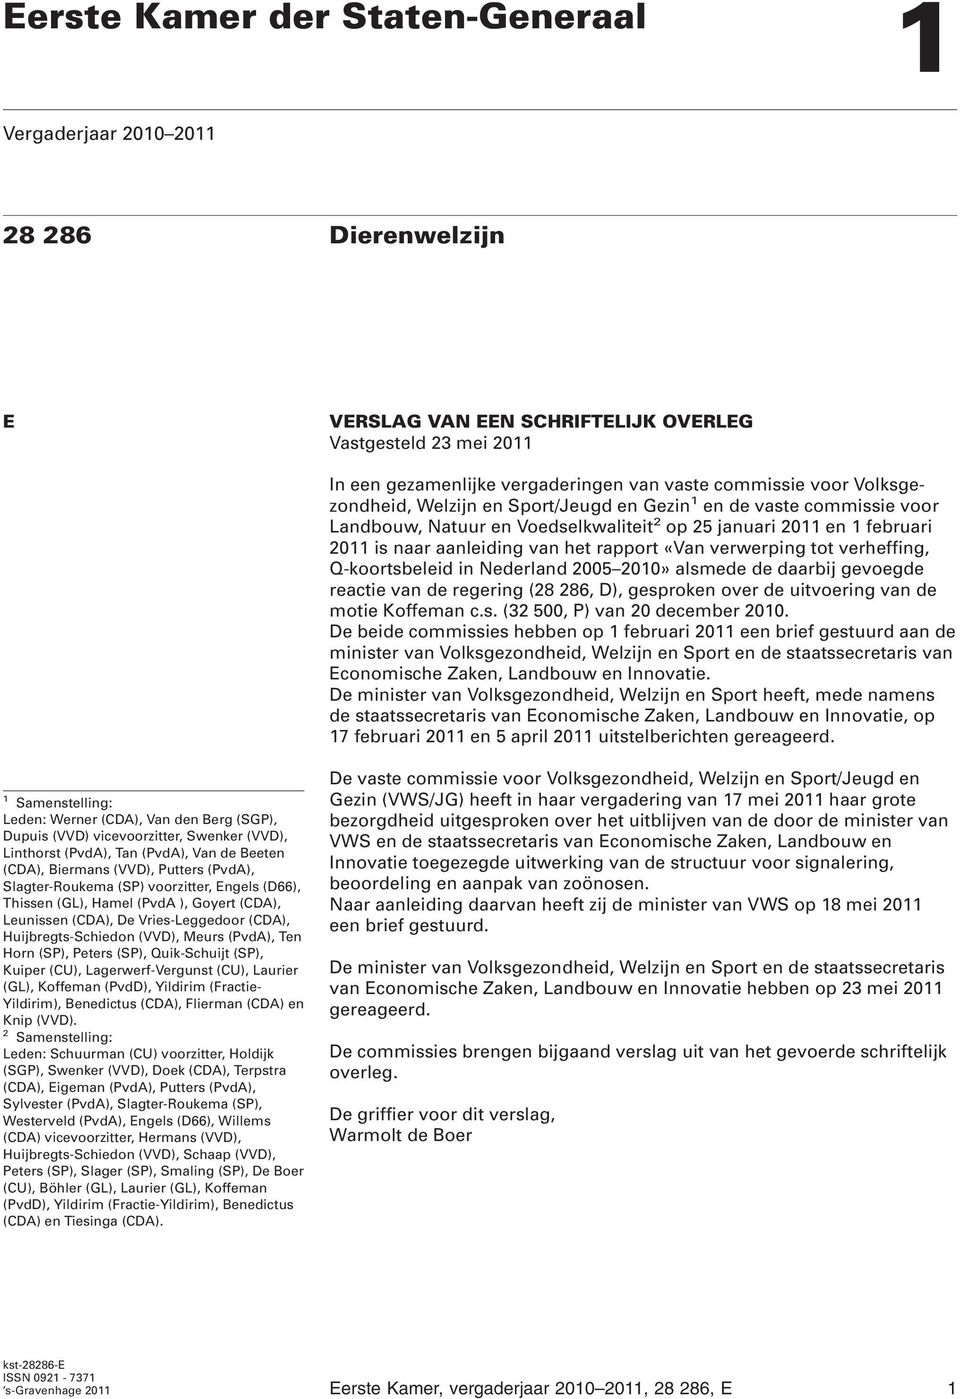 verwerping tot verheffing, Q-koortsbeleid in Nederland 2005 2010» alsmede de daarbij gevoegde reactie van de regering (28 286, D), gesproken over de uitvoering van de motie Koffeman c.s. (32 500, P) van 20 december 2010.